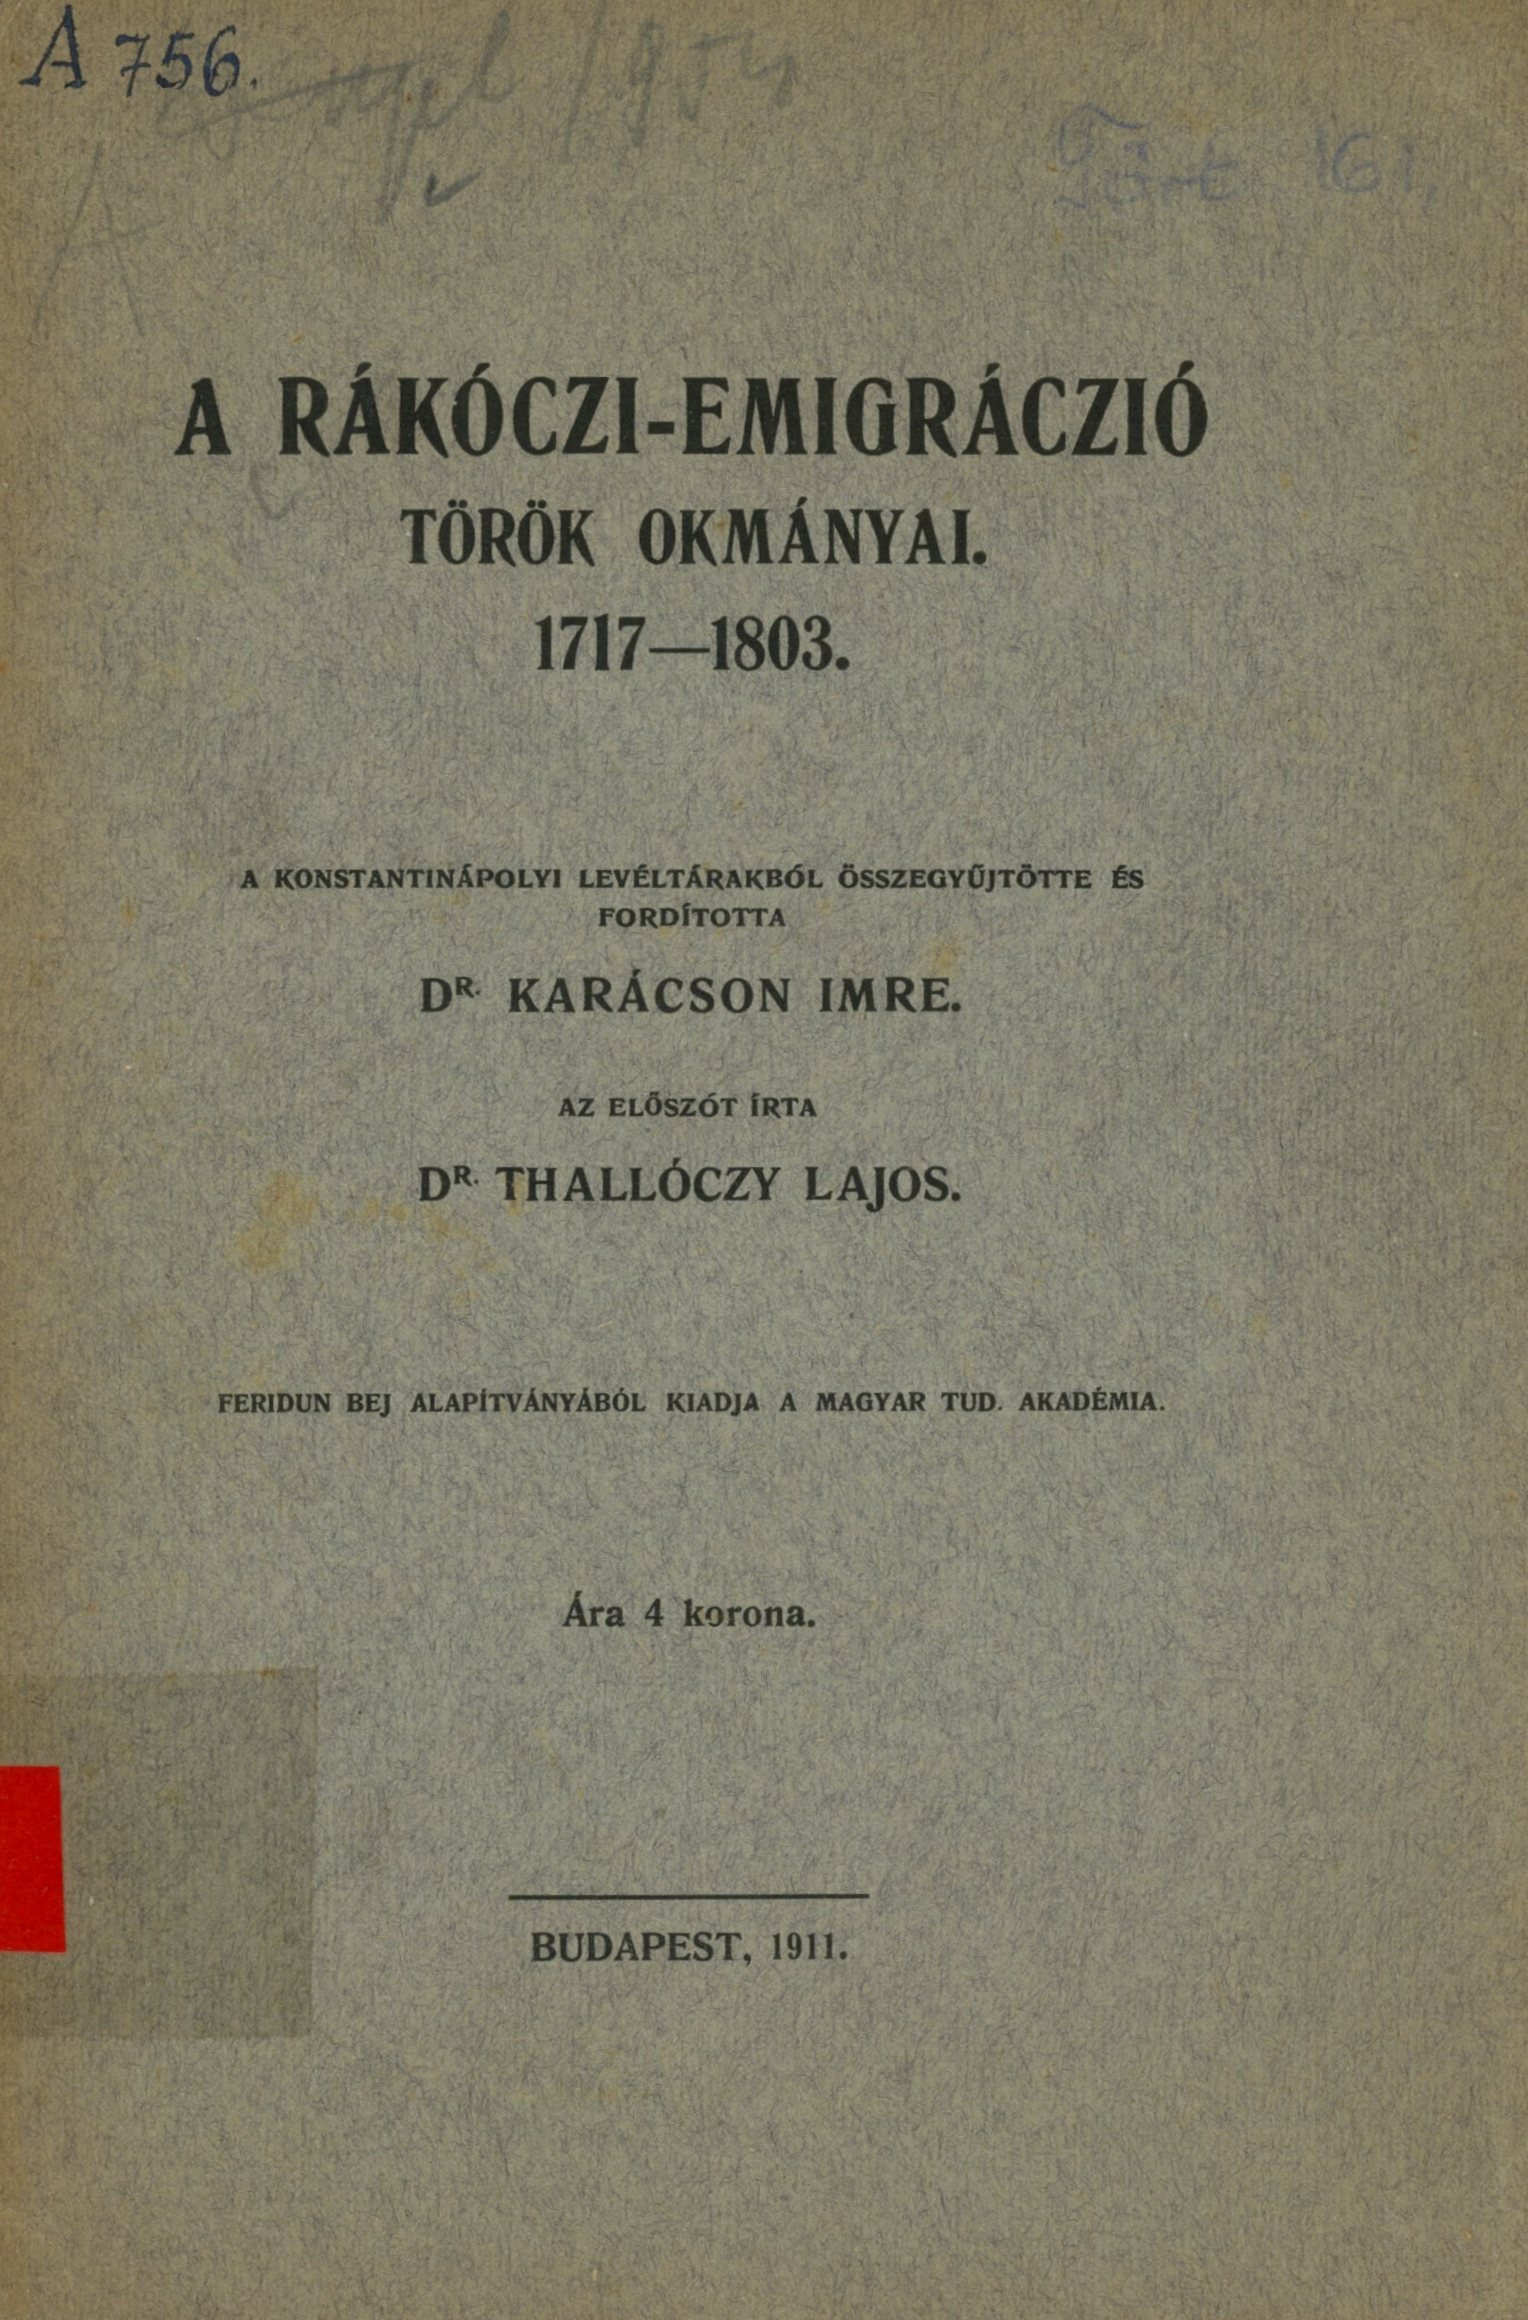 A Rákóczi-Emigráczió török okmányai 1717 - 1803 (Erkel Ferenc Területi Múzeum, Gyula CC BY-NC-SA)